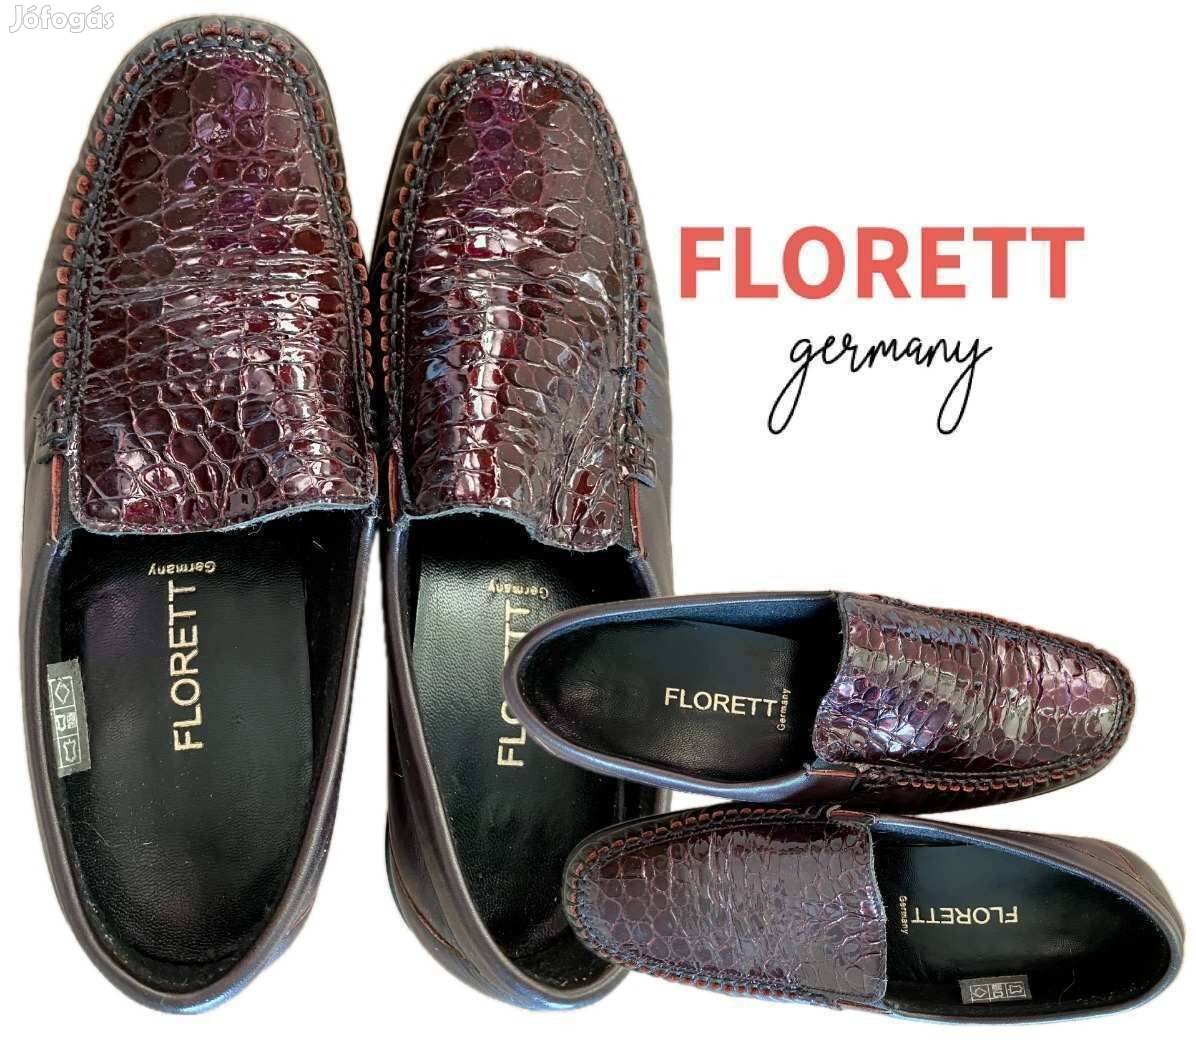 38 eredeti Florett Germani komfort bőr kényelmi cipő shock absorber